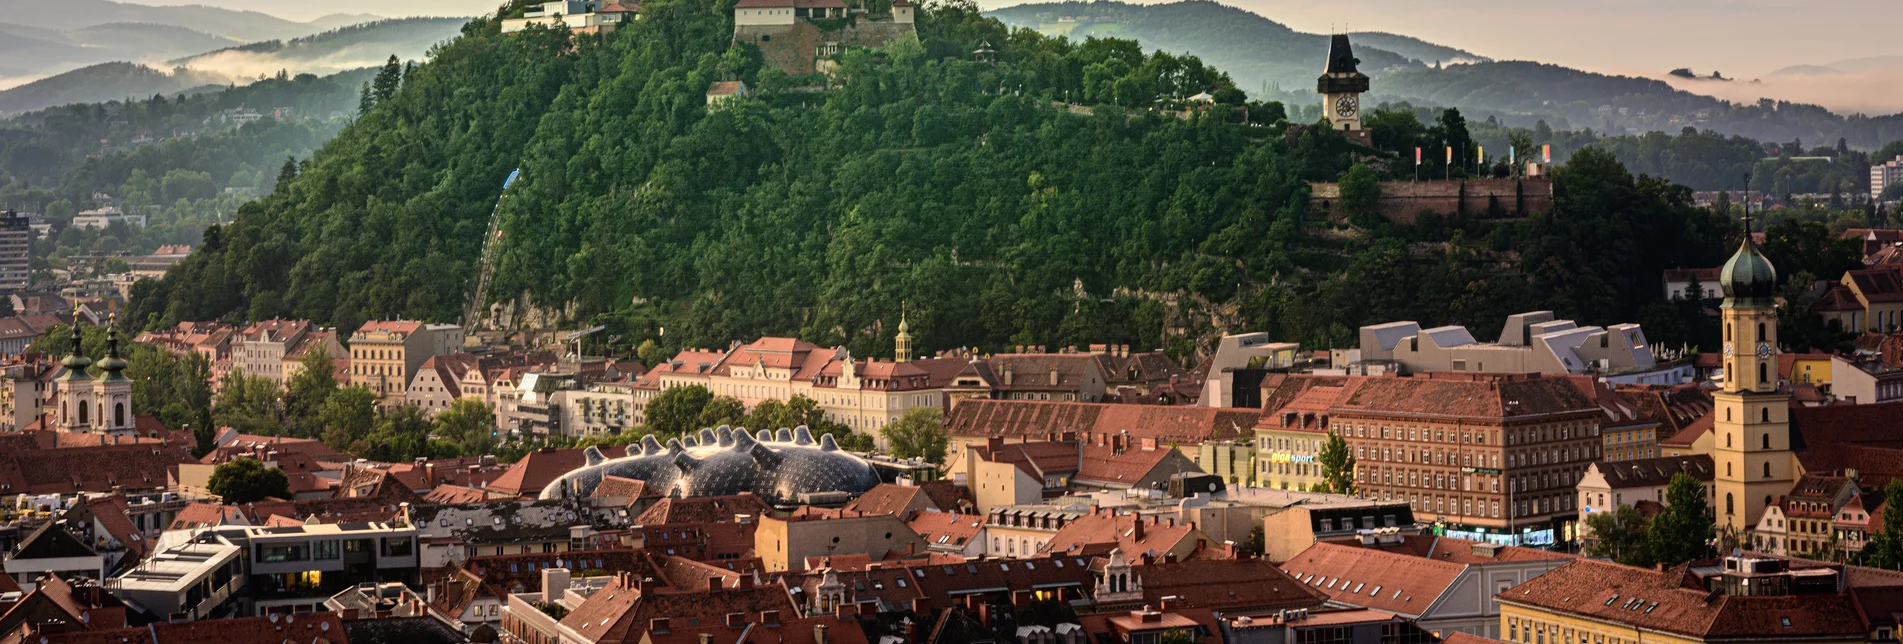 Blick auf den Grazer Schlossberg | © Region Graz | Pixelmaker